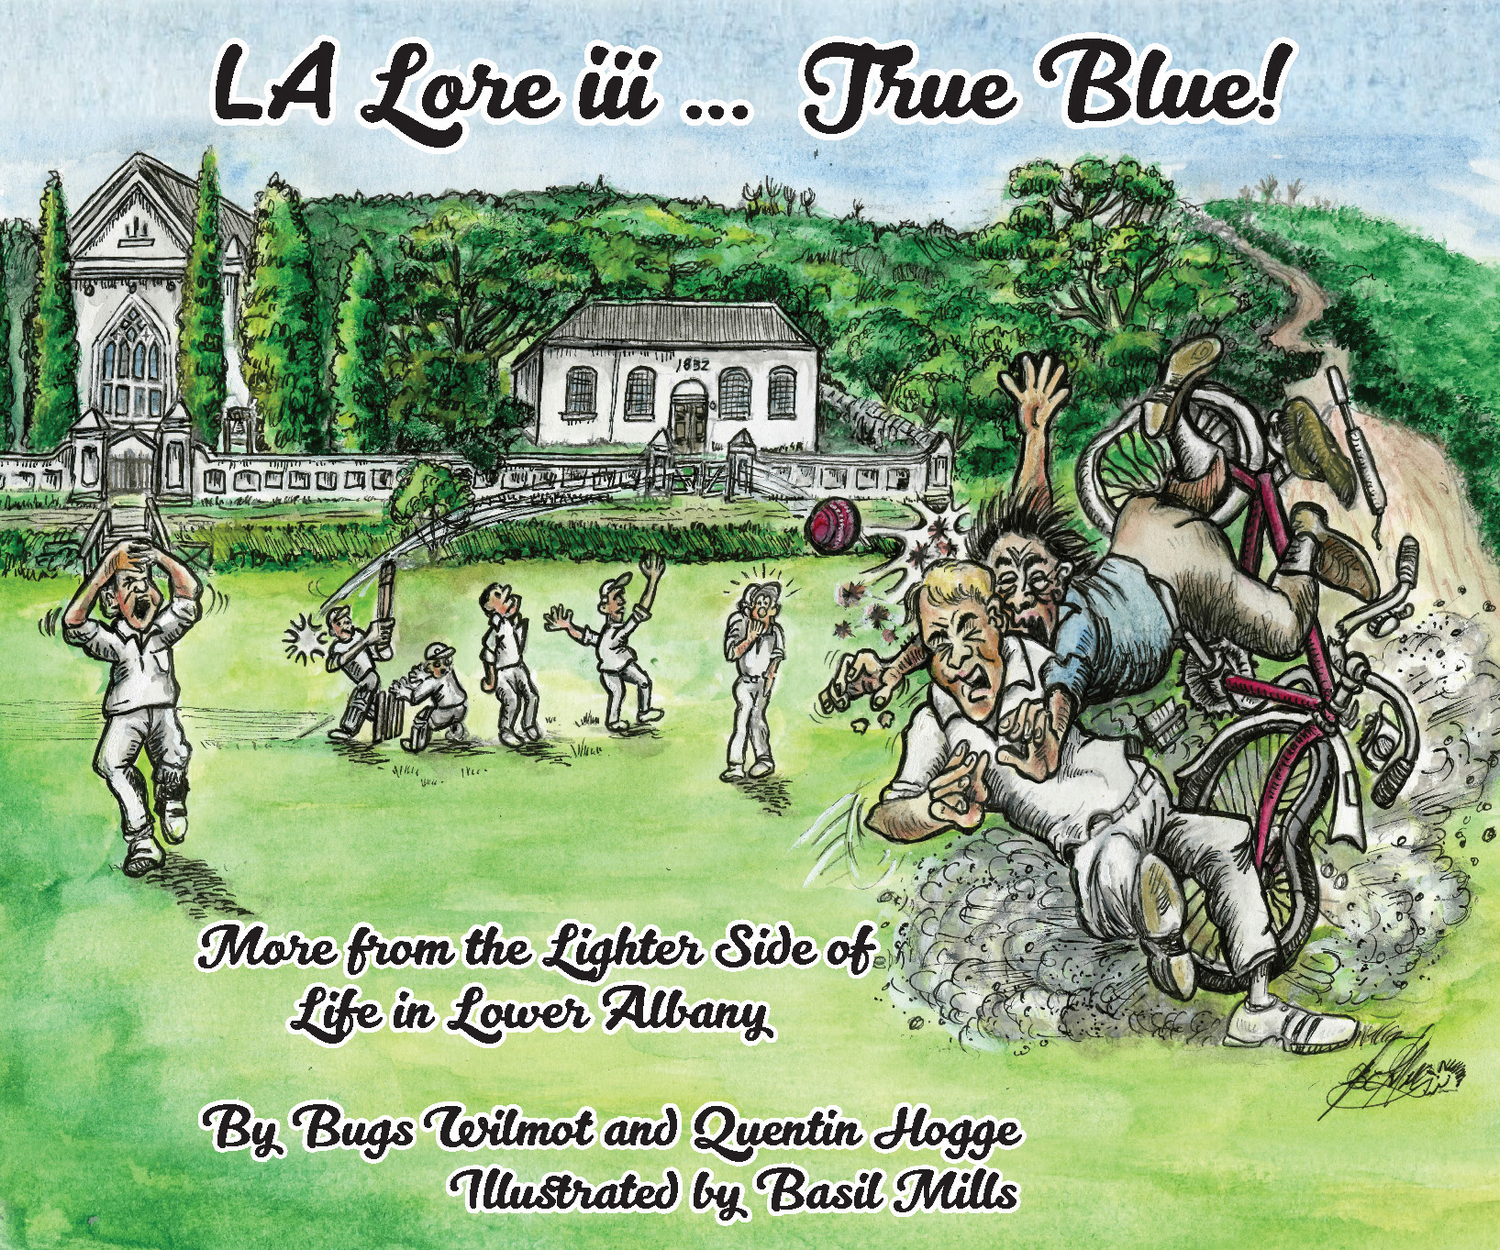 LA Lore iii True Blue